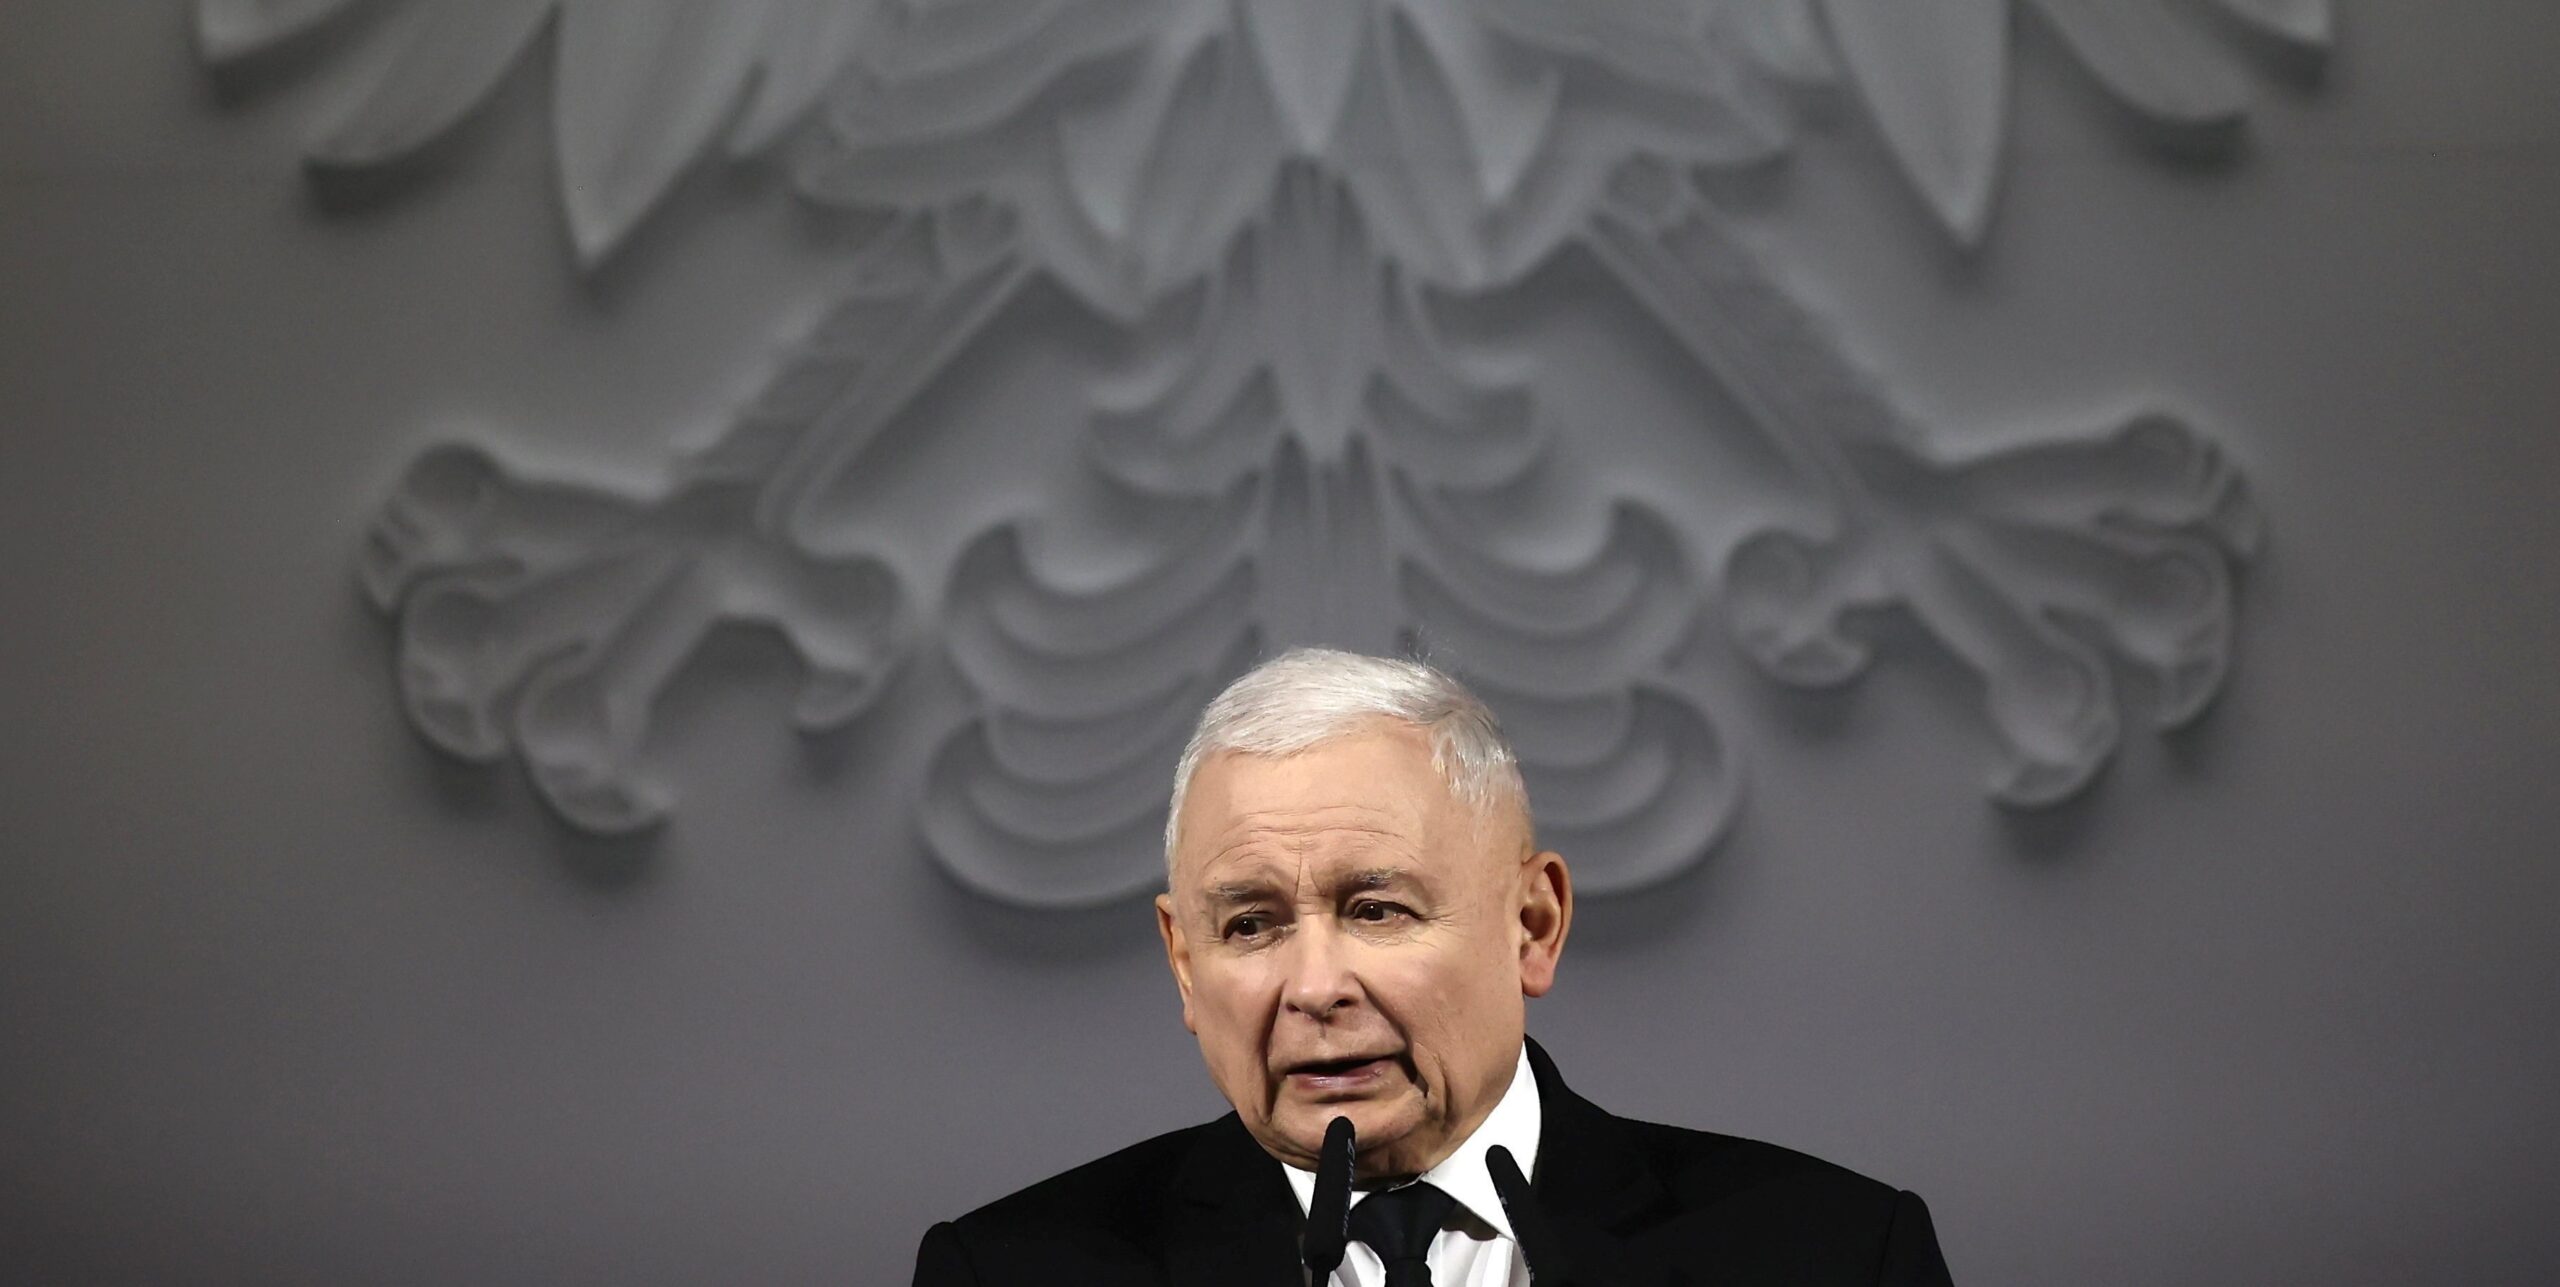 „Zmiażdżymy tych ludzi” – mówi polski przywódca Kaczyński w odpowiedzi na protesty